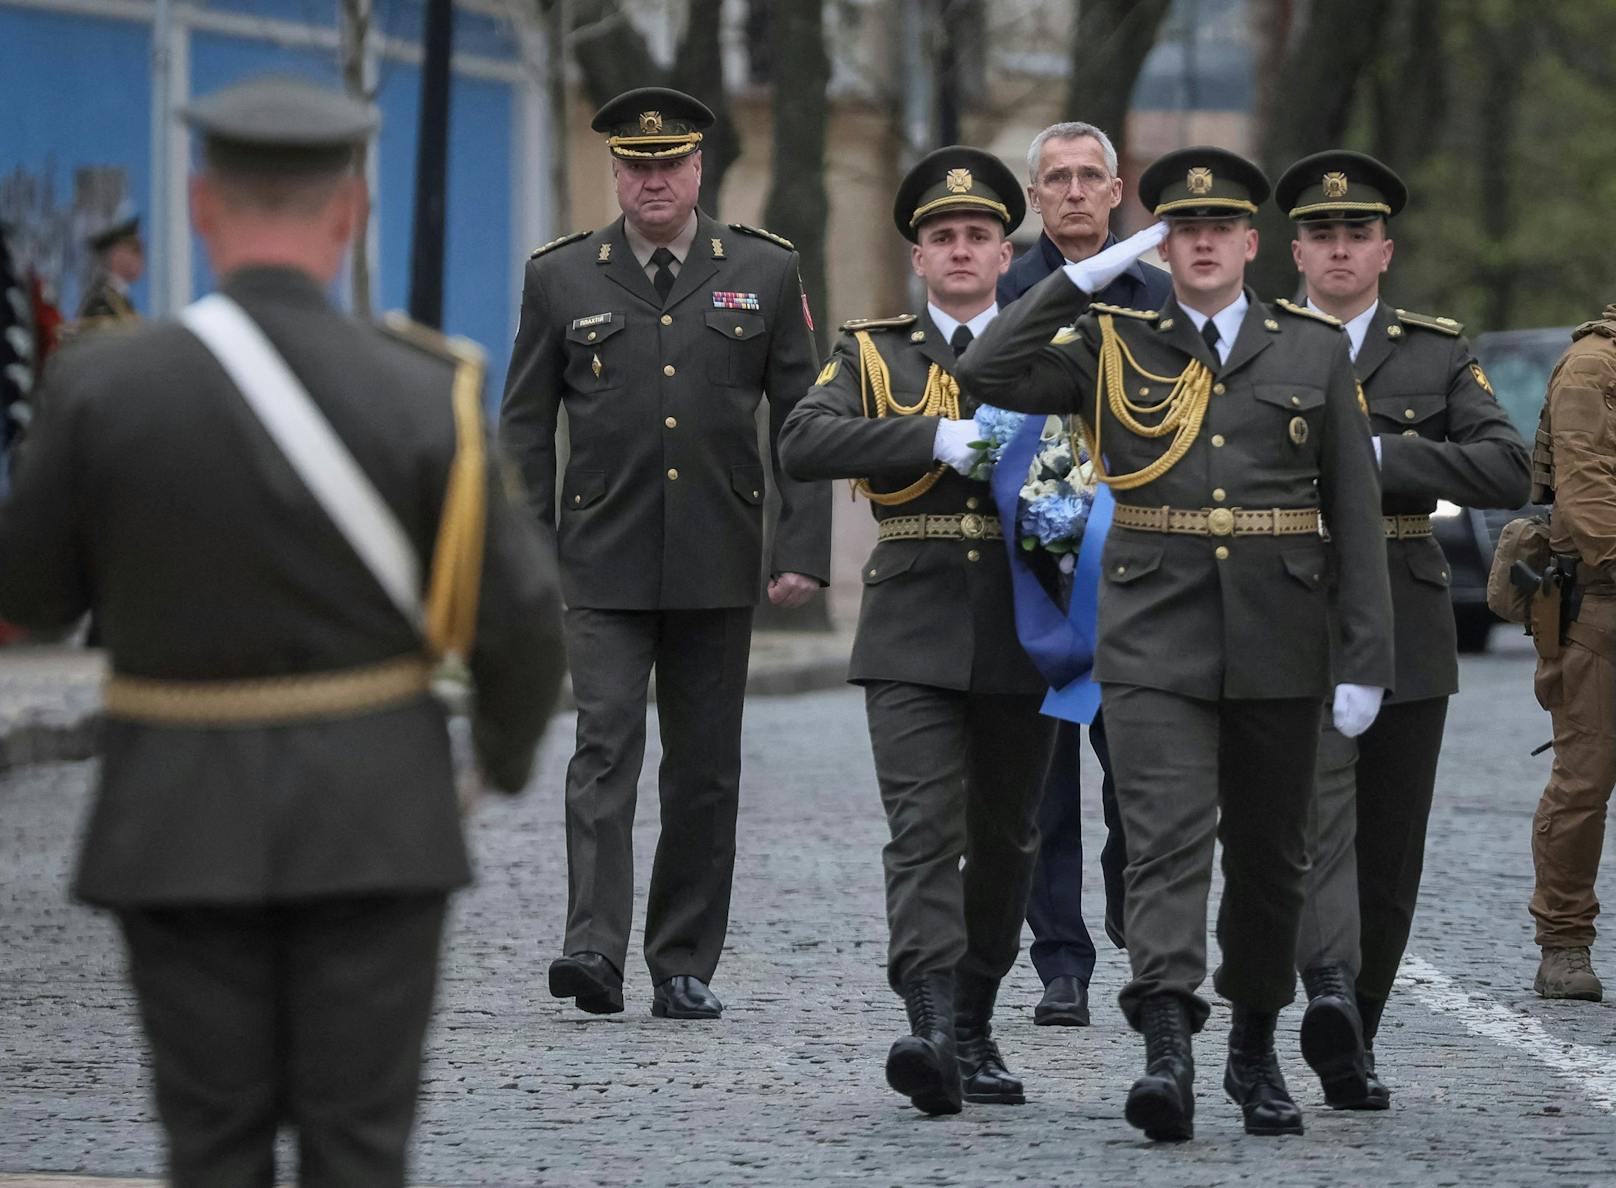 Am Donnerstag stattet NATO-Generalsekretär Jens Stoltenberg der Ukraine einen für die Öffentlichkeit unerwarteten Besuch ab.